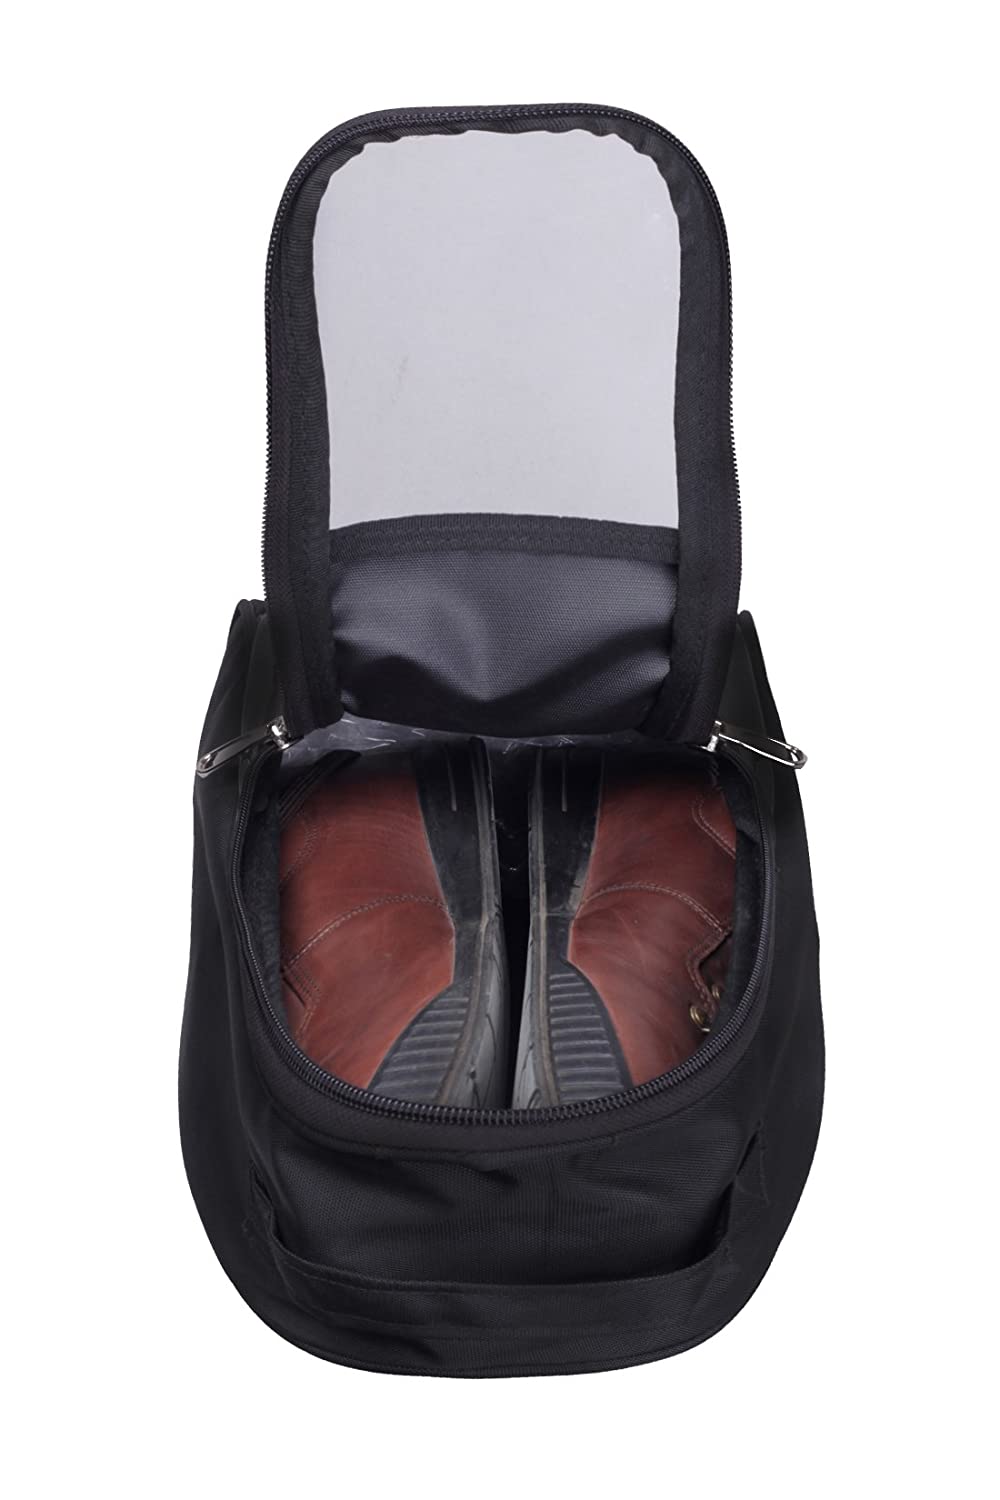 Torbi 7L Black Shoe Bag